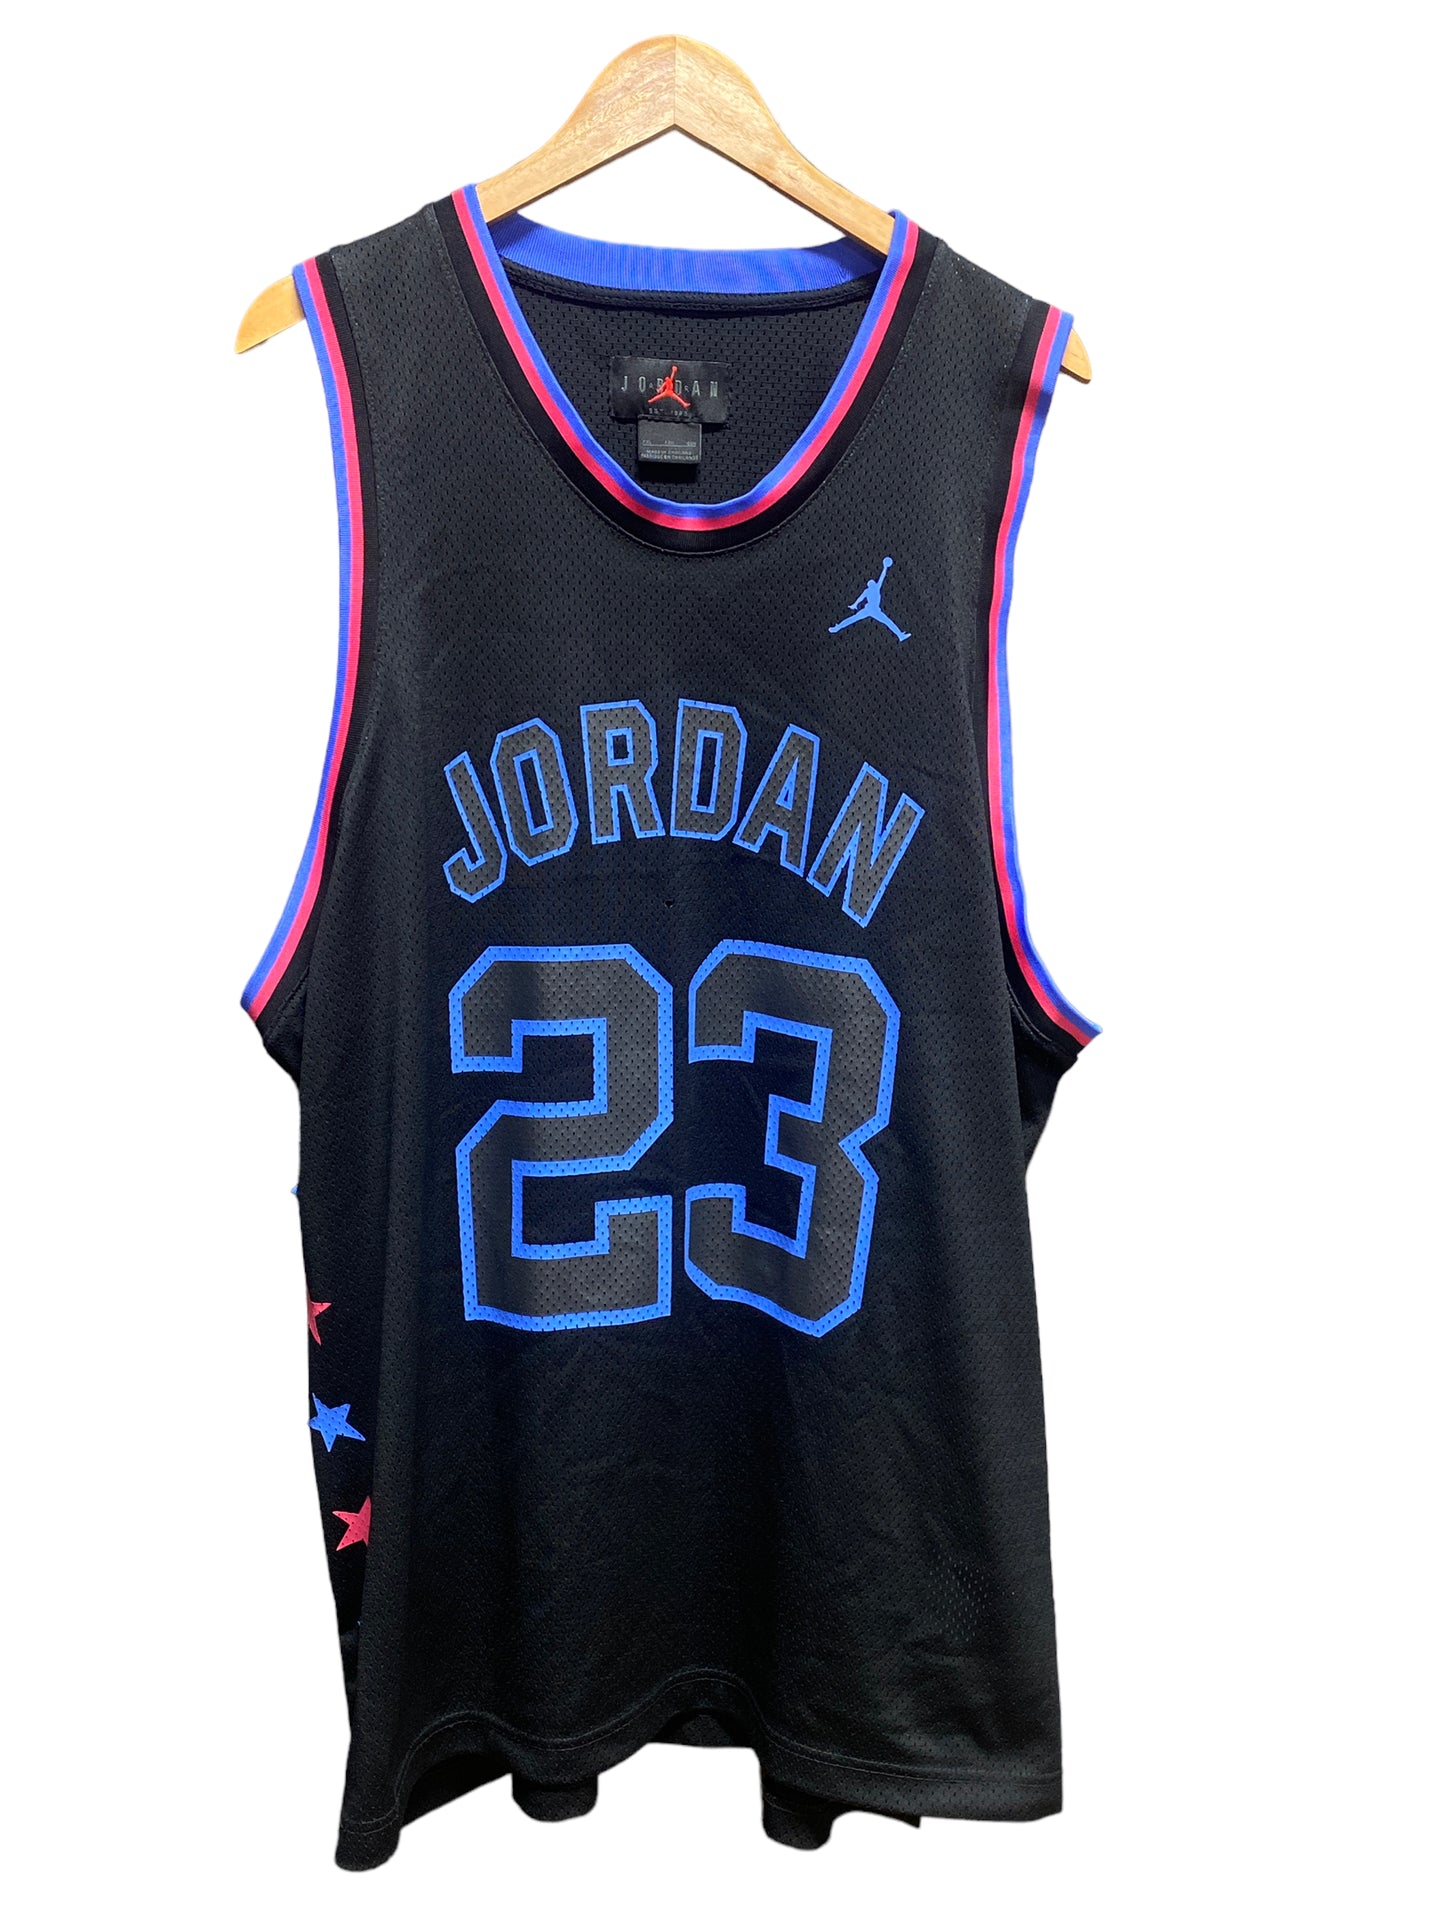 Jordan Brand Jordan Jersey #23 Multicolor Size XXL